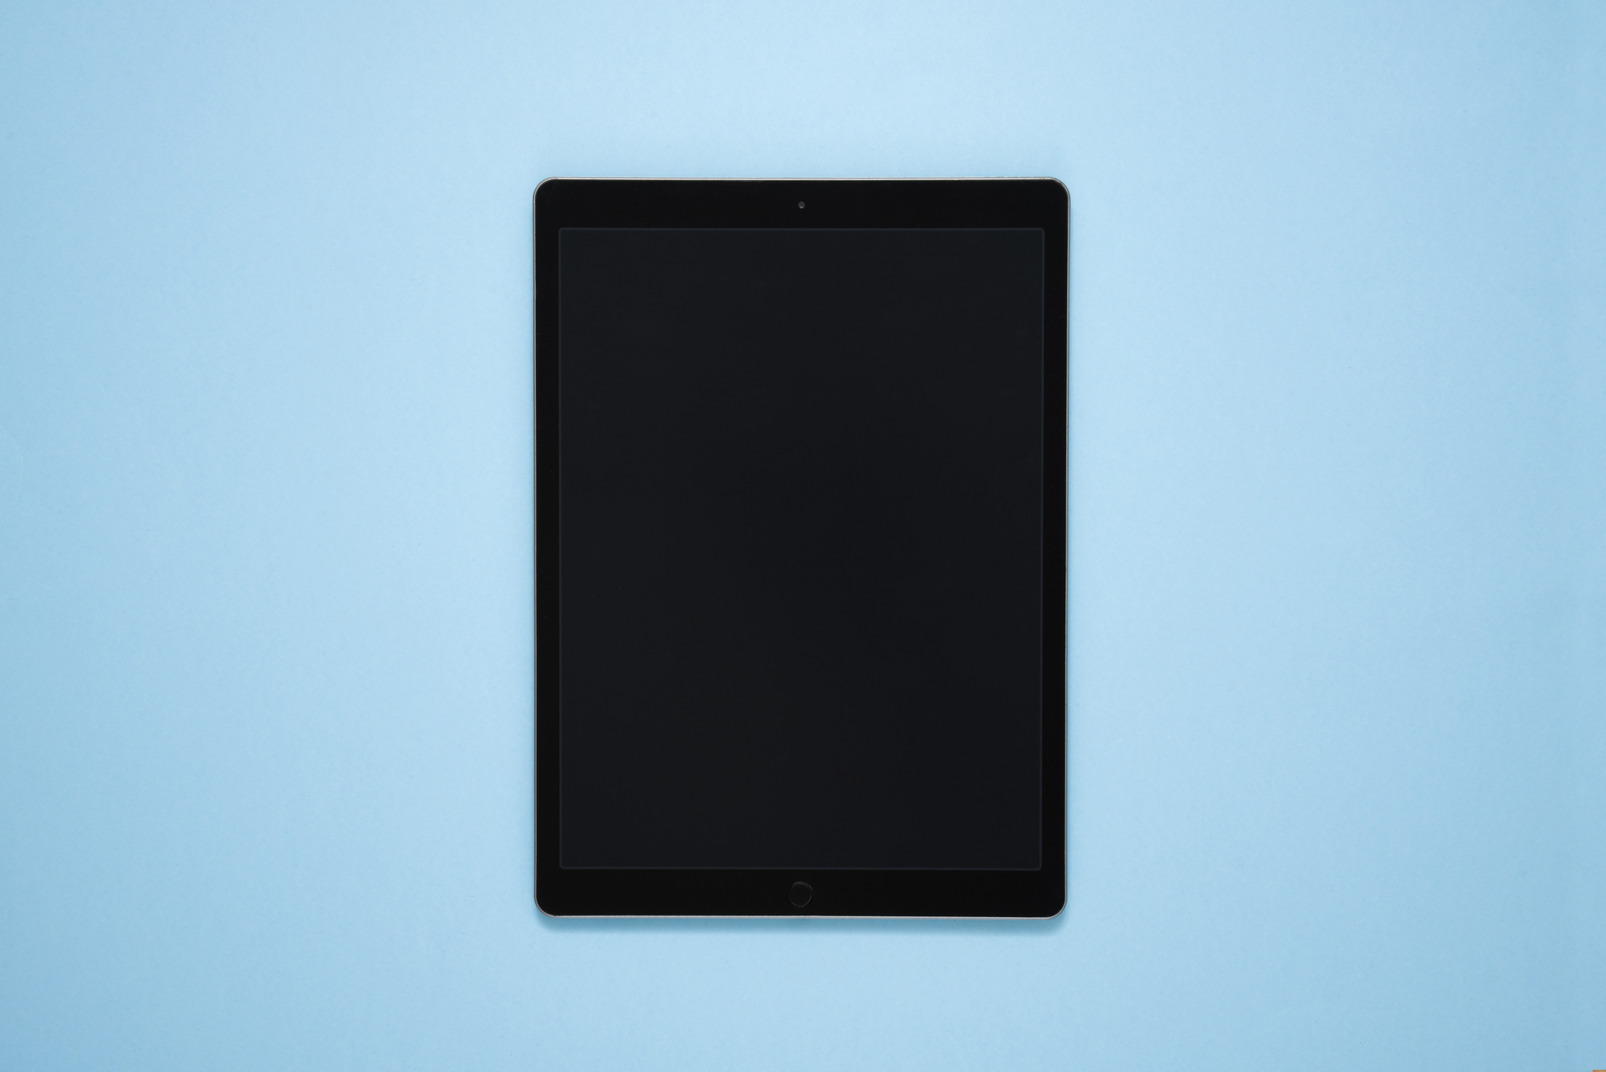 Digital tablet over blue background